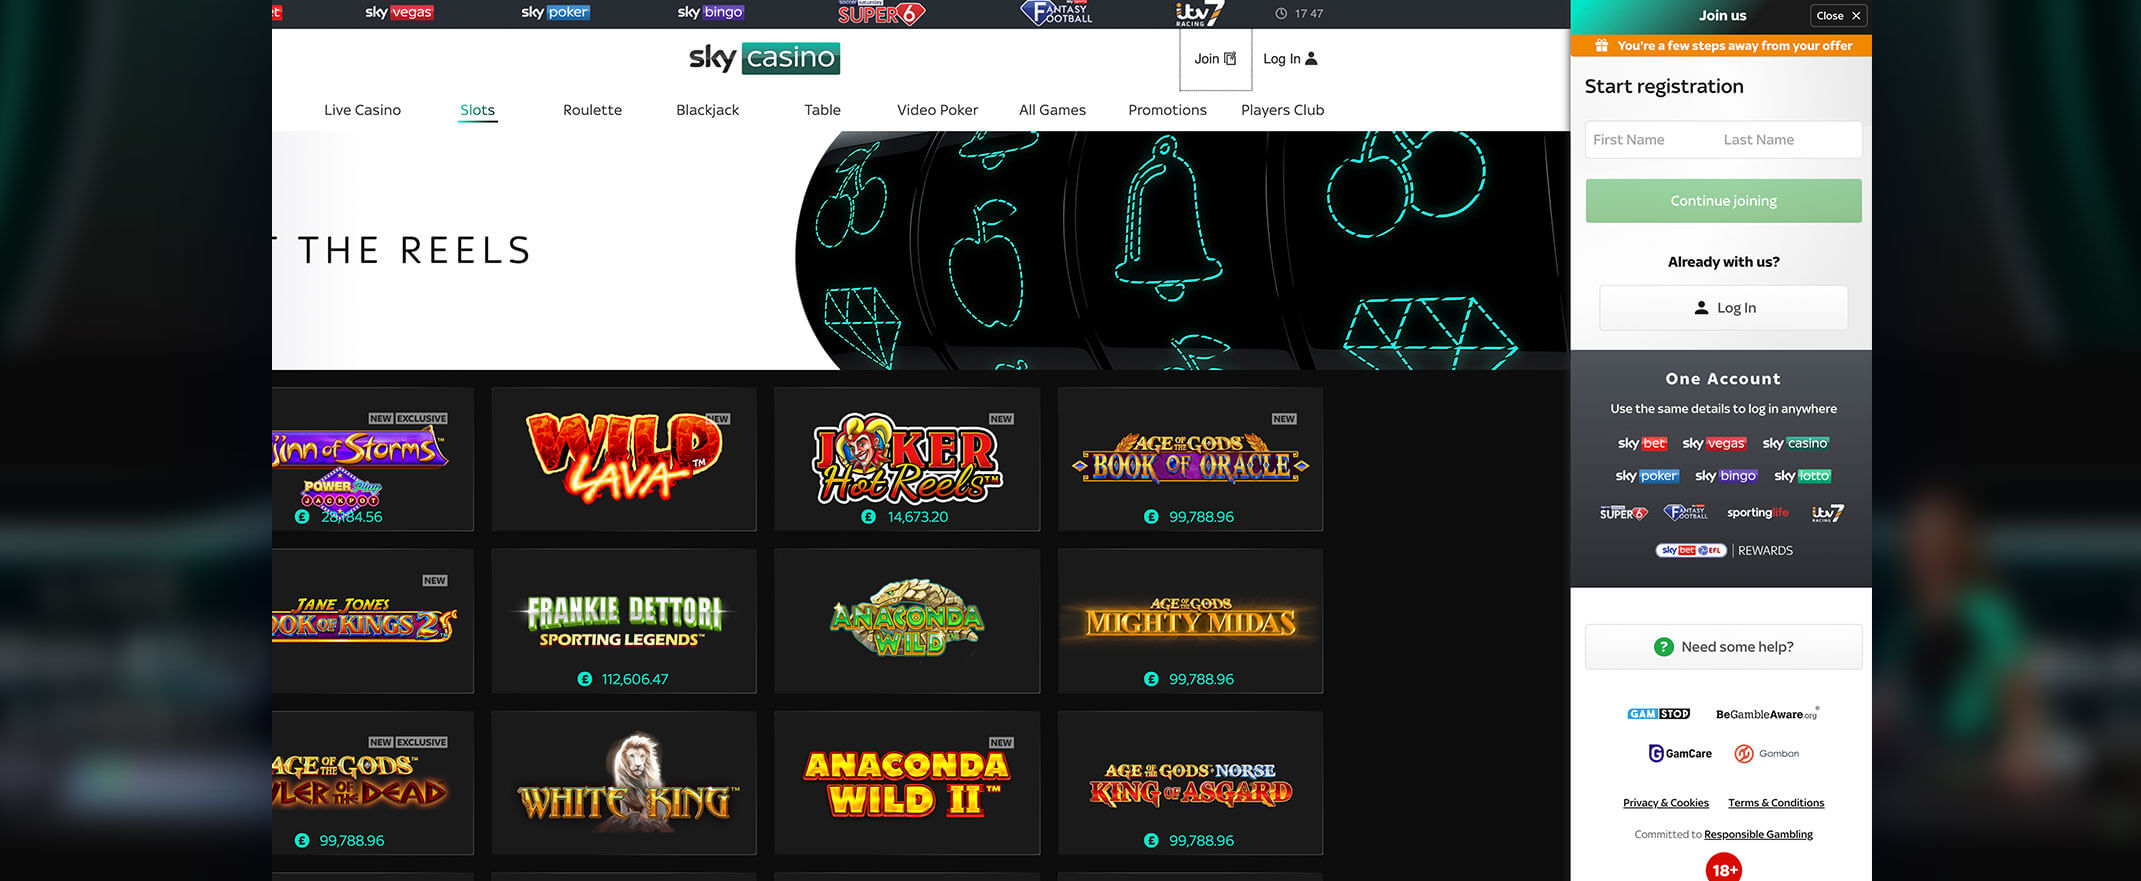 Sky Casino screenshot of the registration process